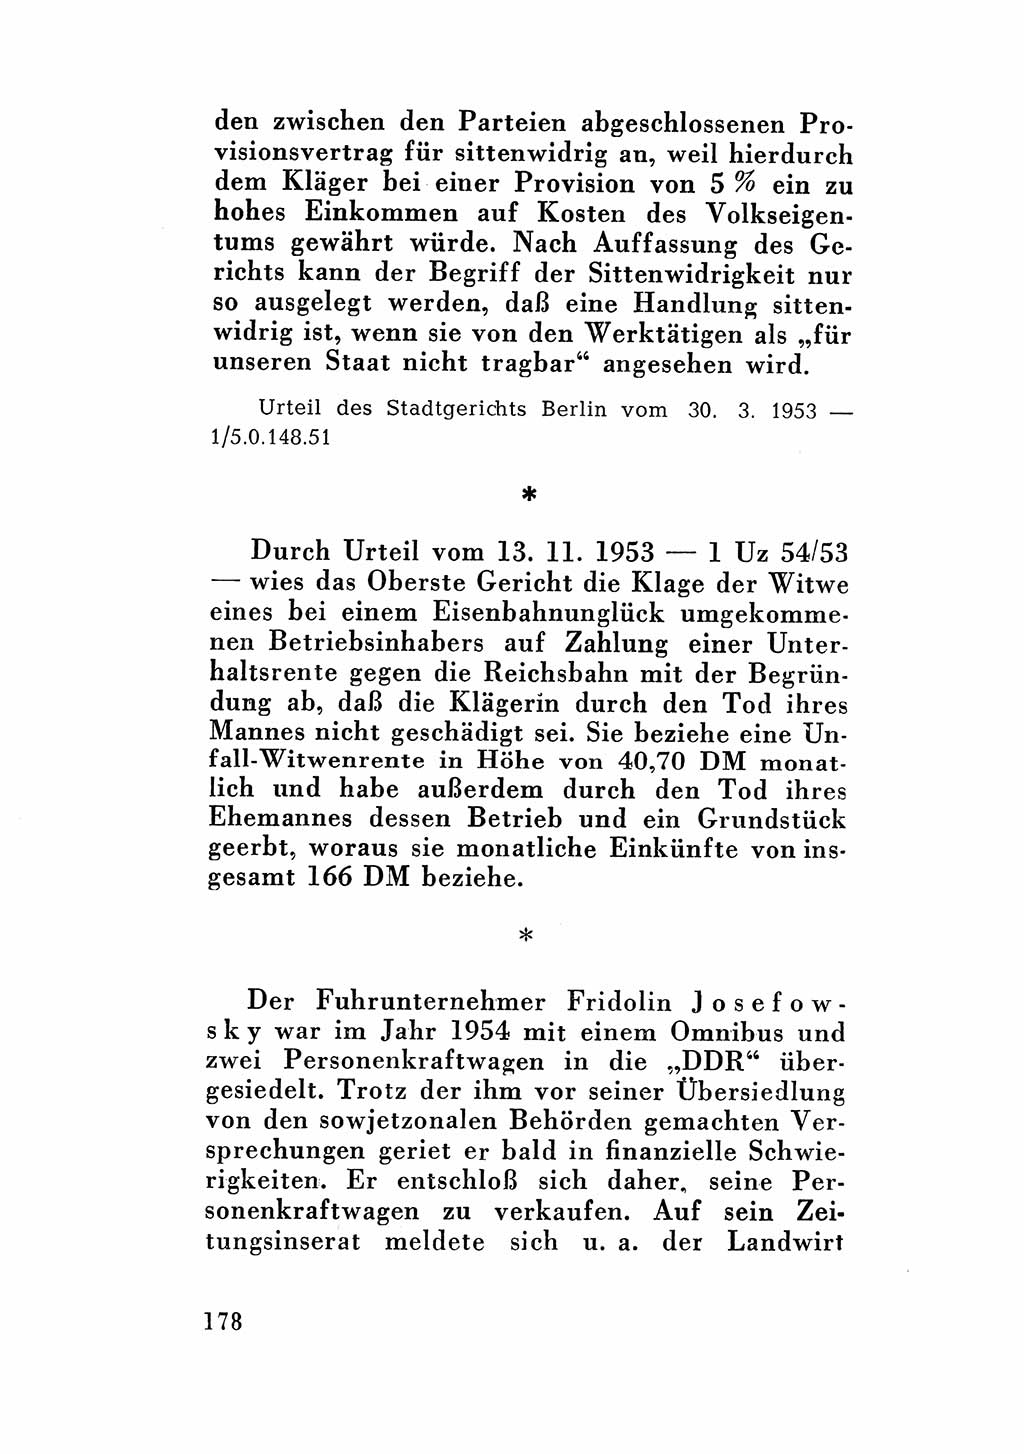 Katalog des Unrechts, Untersuchungsausschuß Freiheitlicher Juristen (UfJ) [Bundesrepublik Deutschland (BRD)] 1956, Seite 178 (Kat. UnR. UfJ BRD 1956, S. 178)